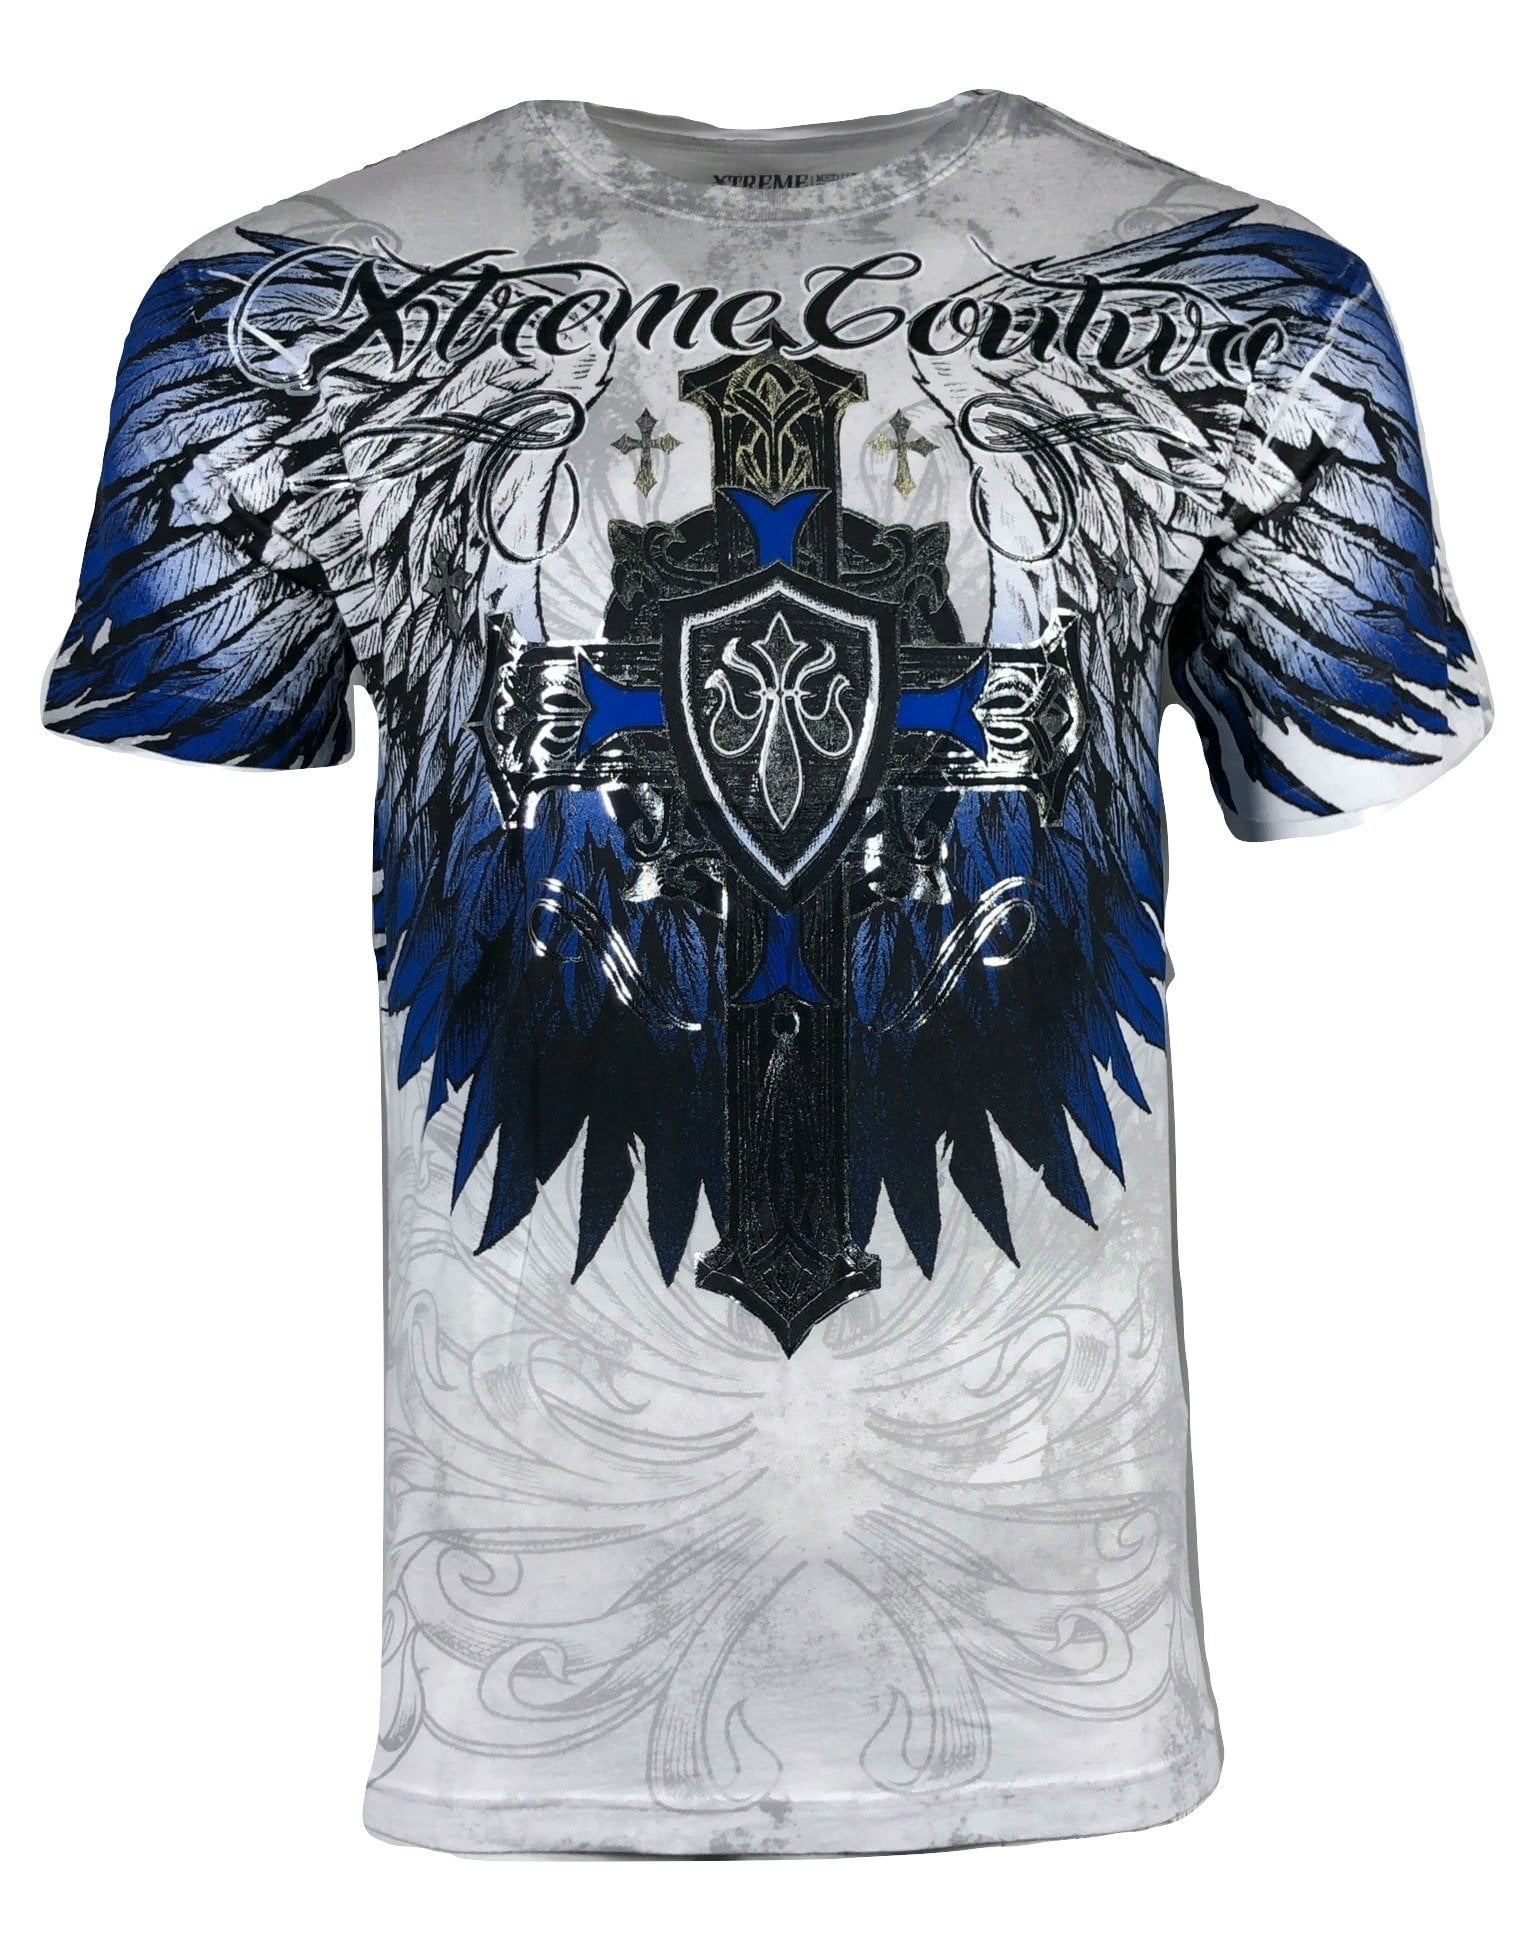 XTREME COUTURE by AFFLICTION Men's T-Shirt TEMPEST Biker MMA - Walmart.com